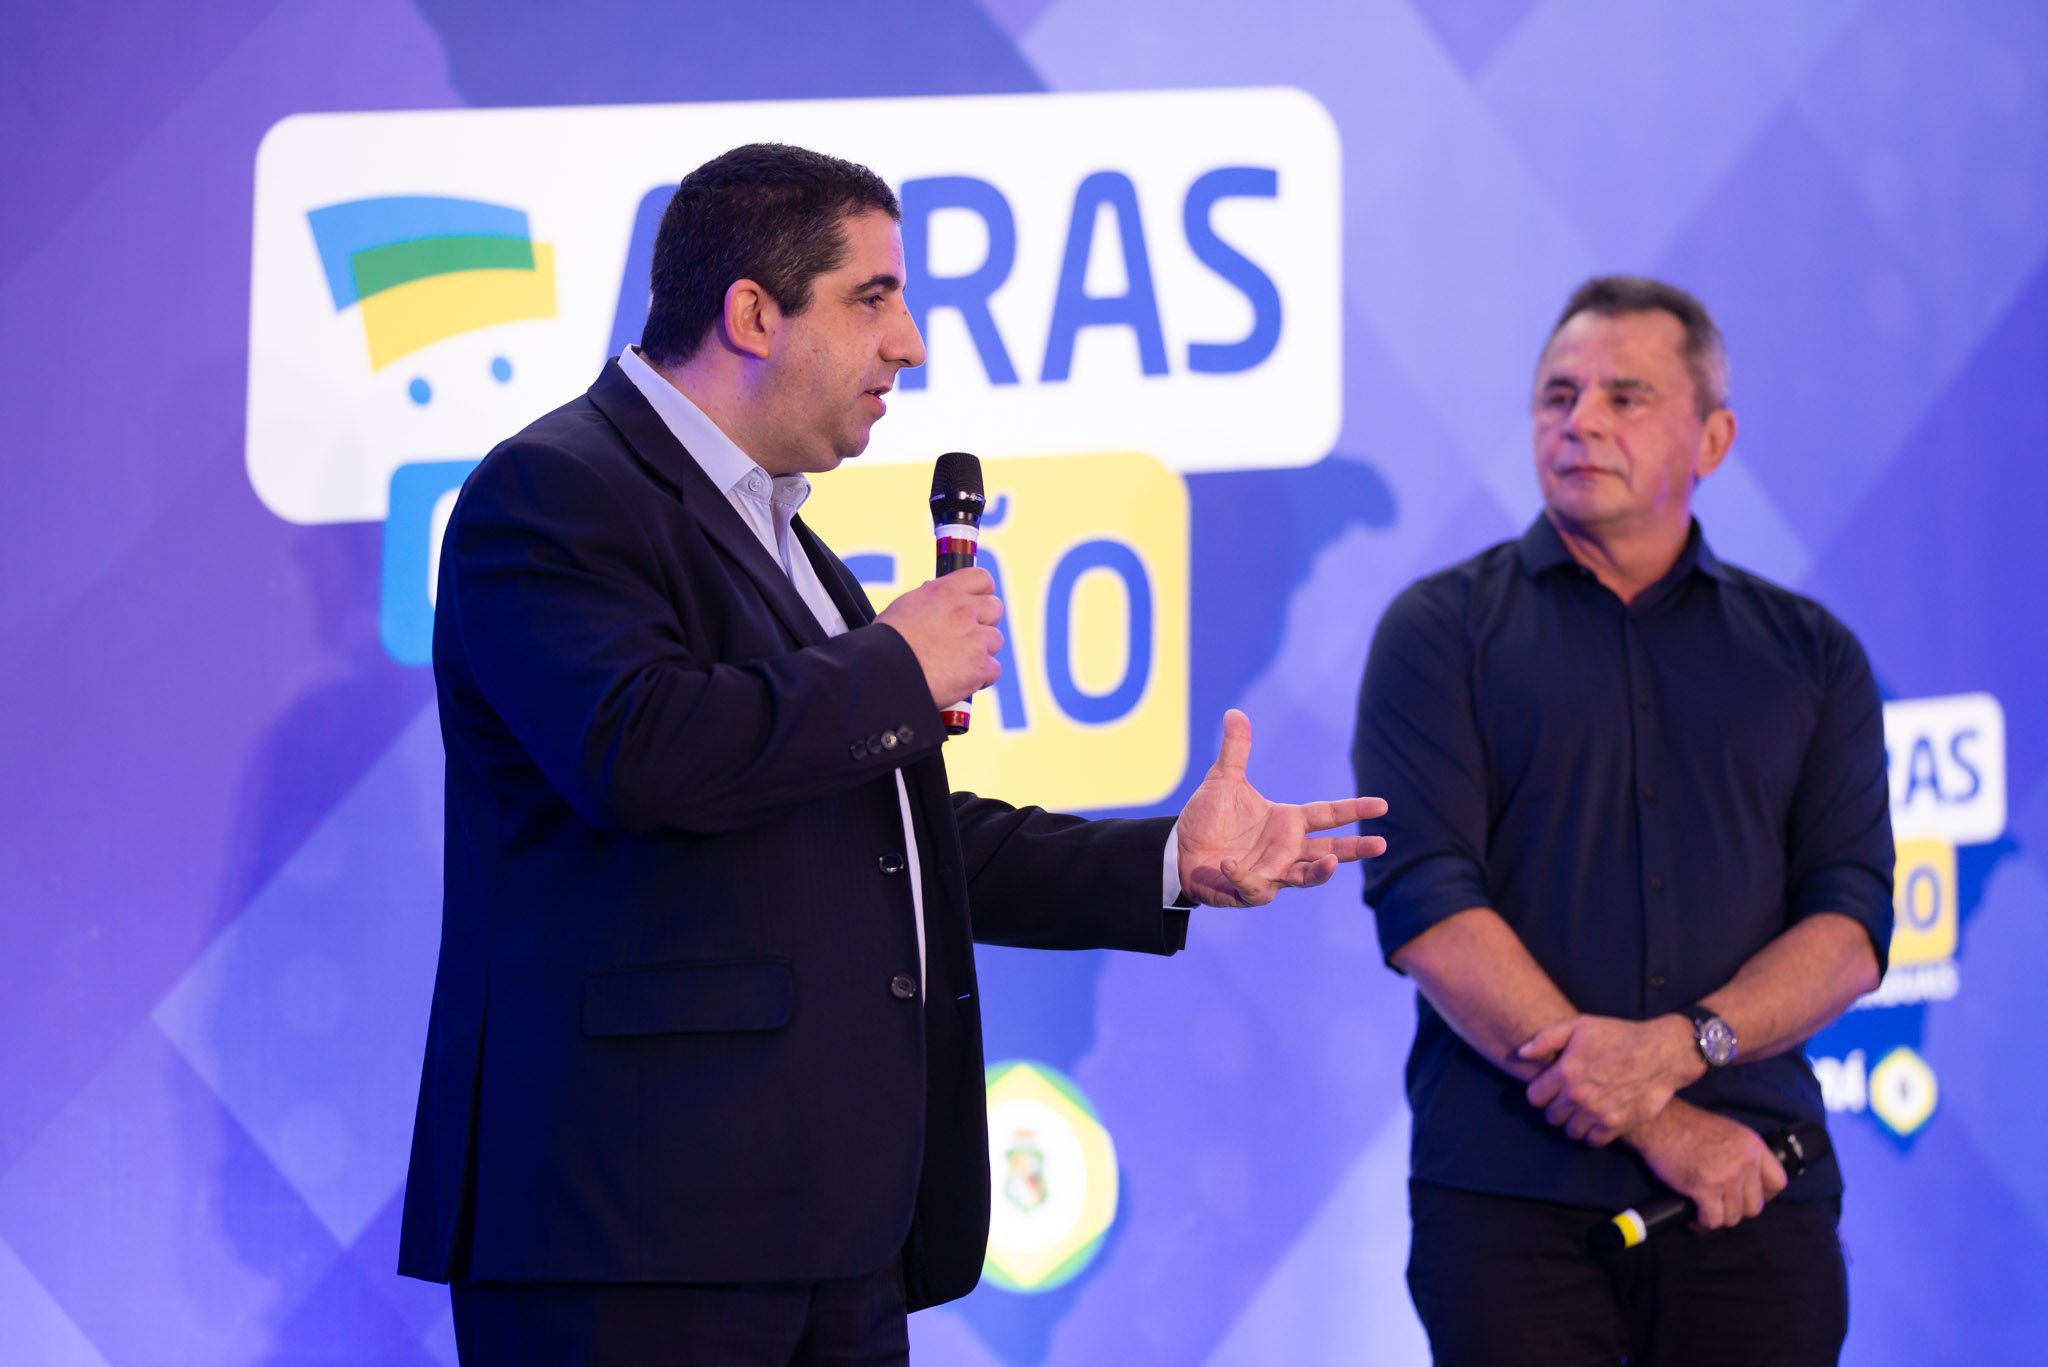 Featured image for “ABRAS em Ação nas Estaduais – Ceará, colaboração entre a indústria e o varejo”